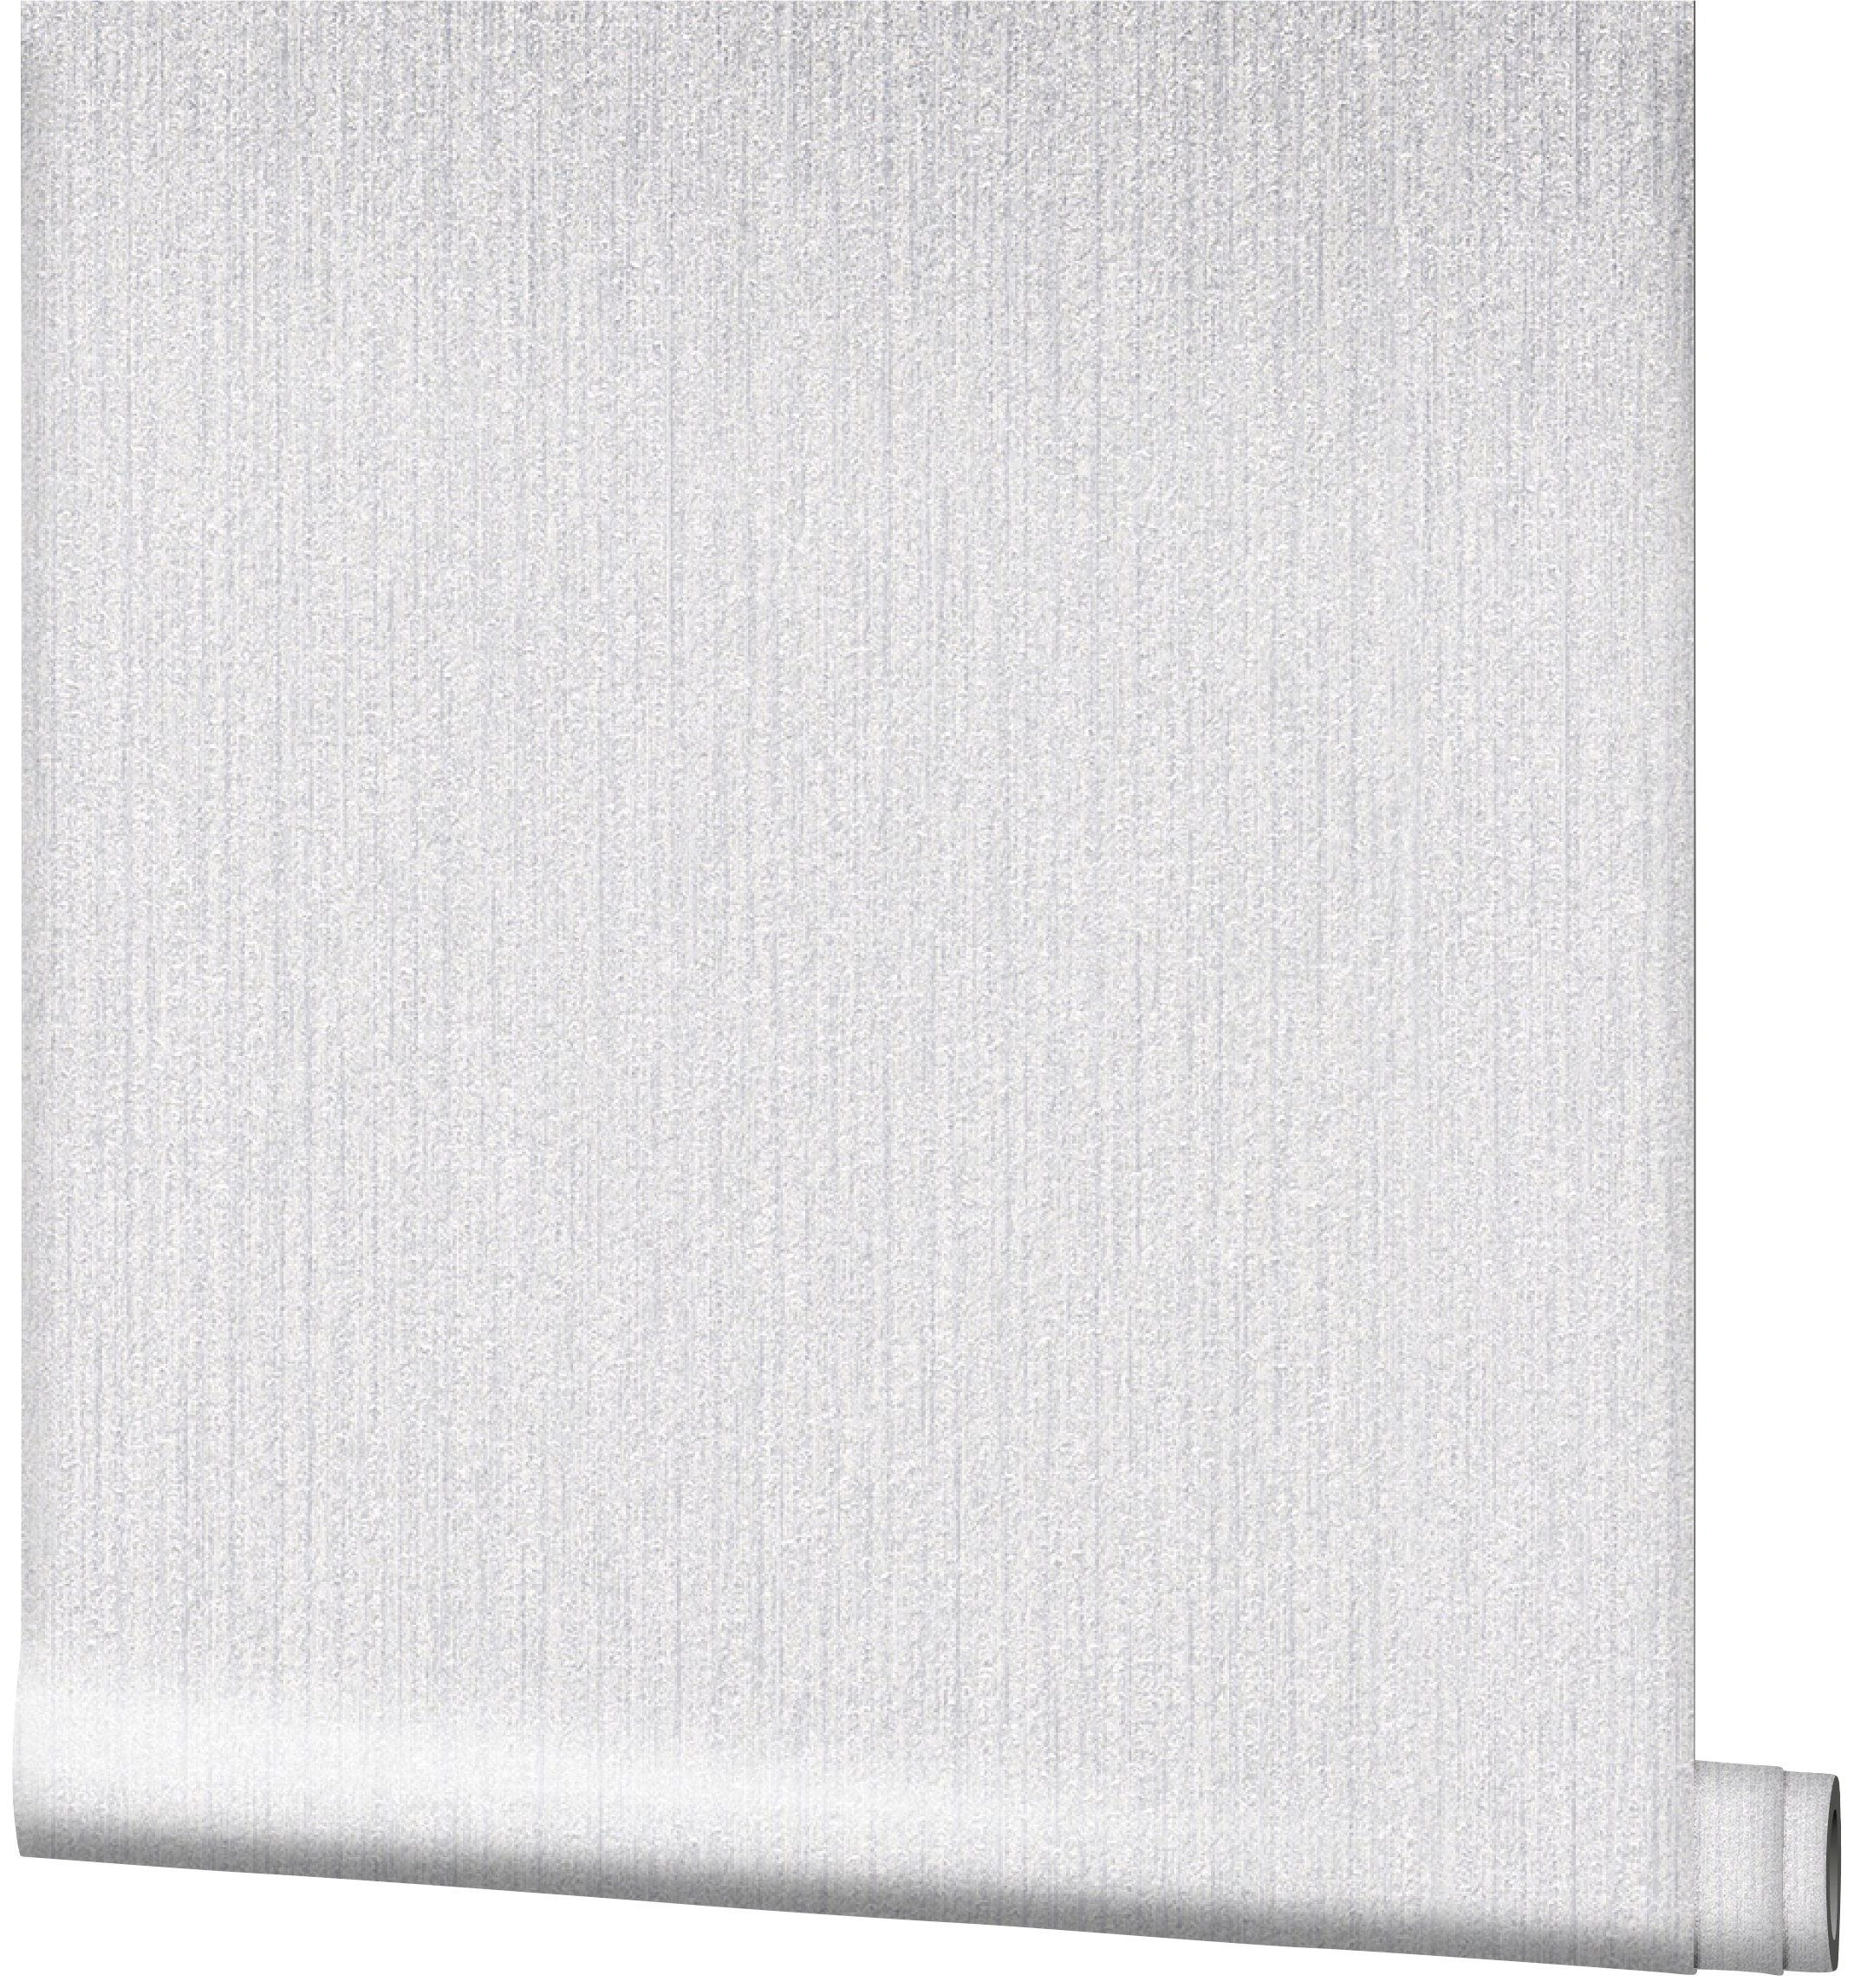 SCHÖNER WOHNEN-Kollektion Vliestapete, 0,53 realistisch, weiß/silber Meter 10,05 x